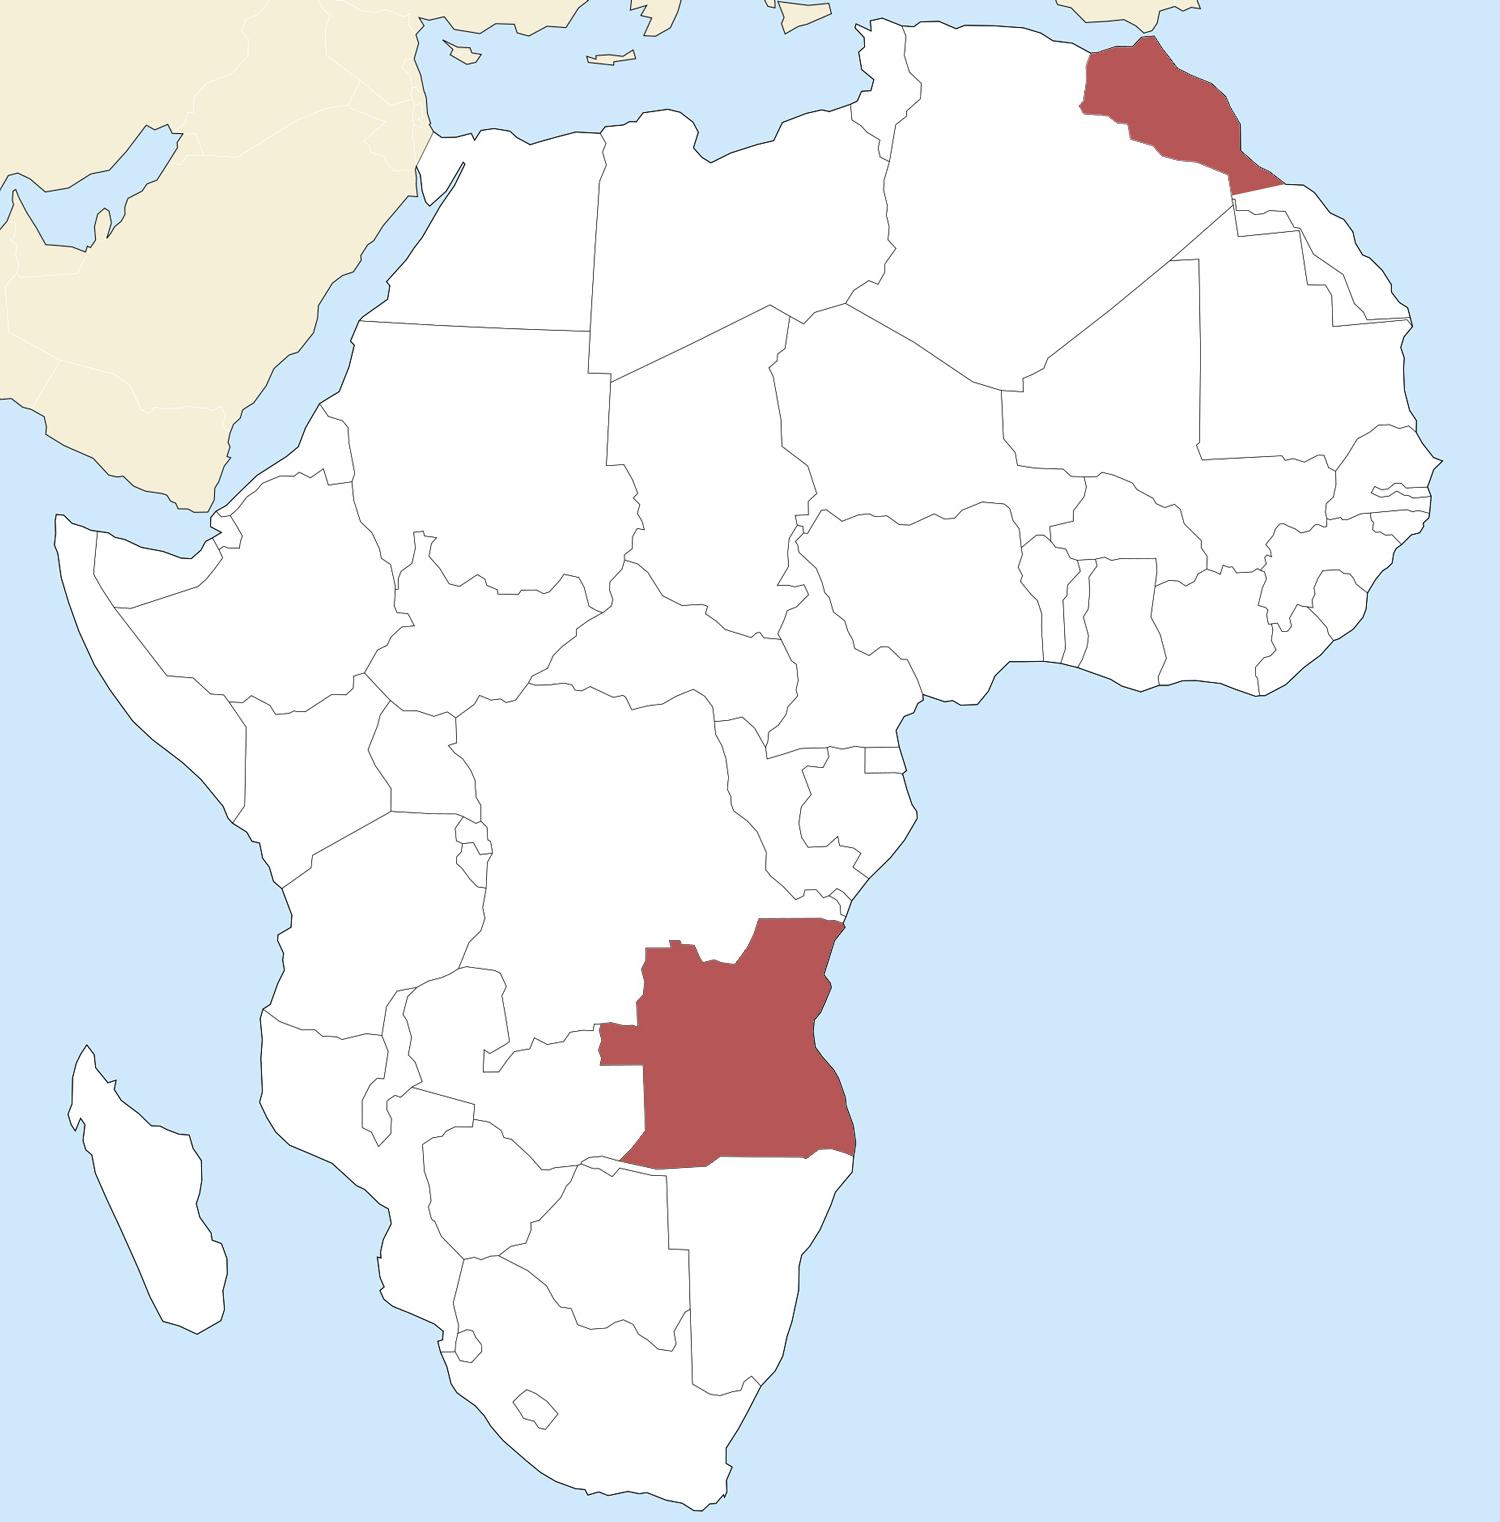 Angola and Morocco